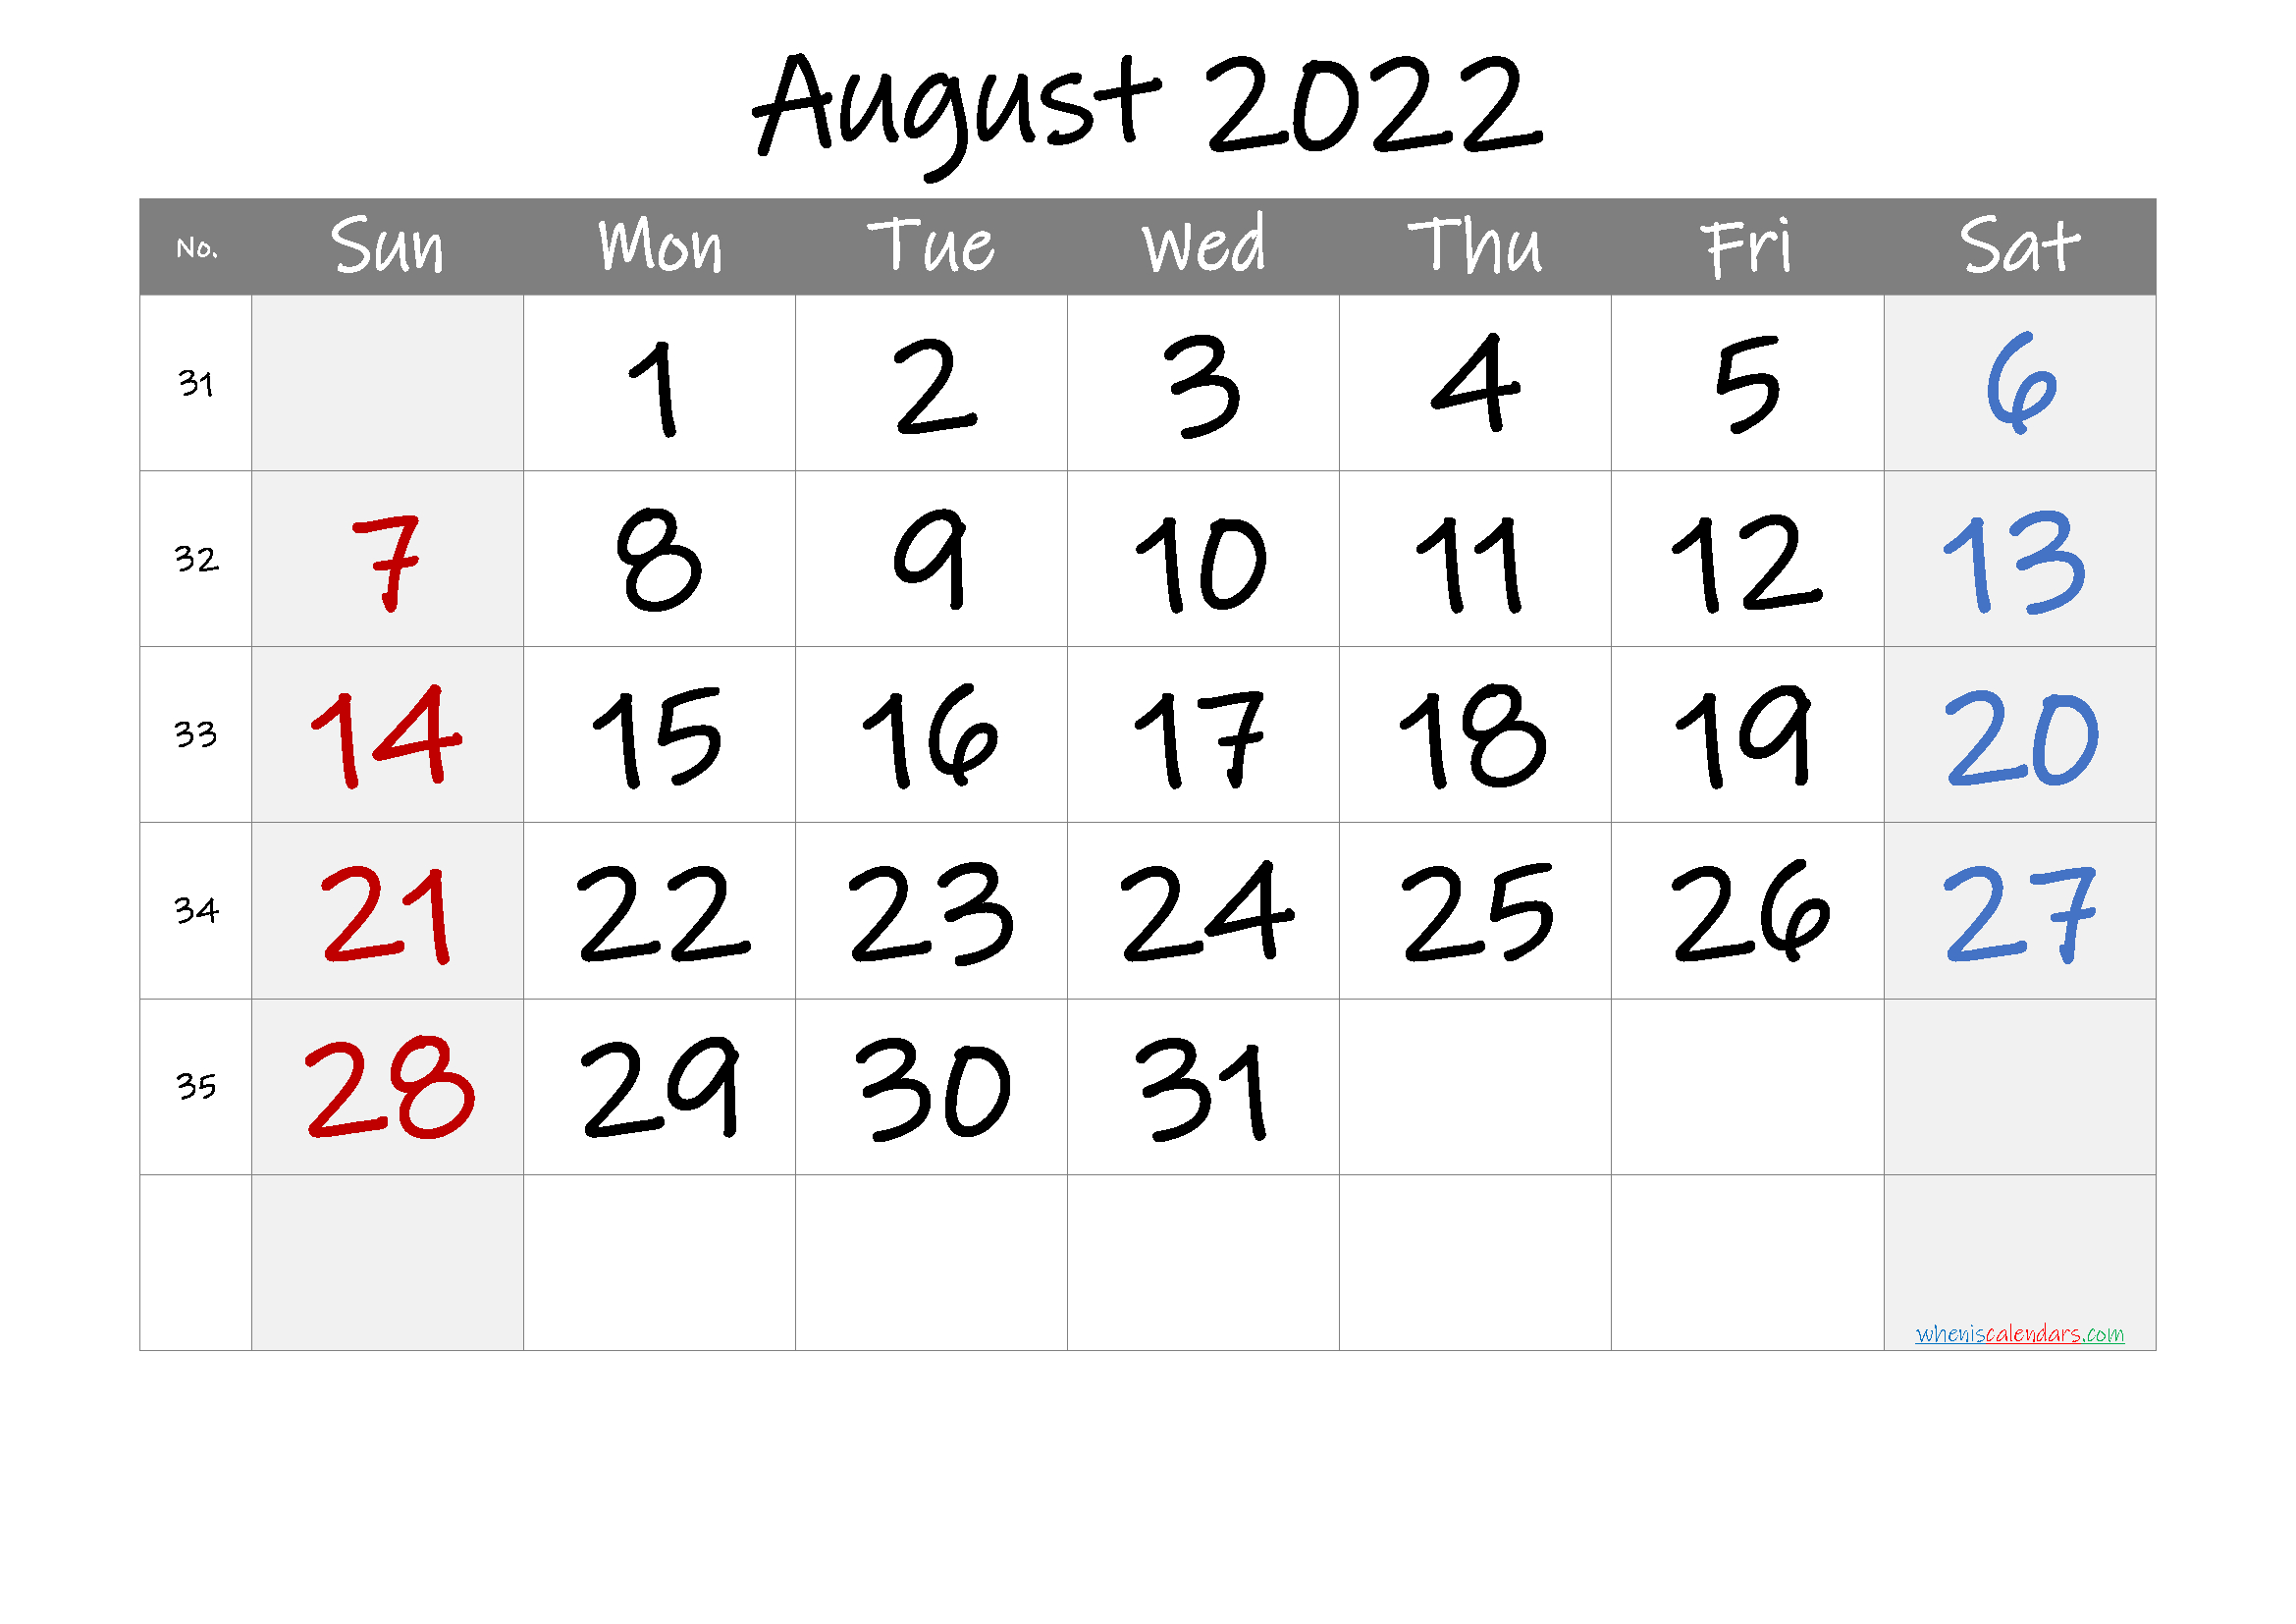 August 2022 Printable Calendar With Week Numbers - 6